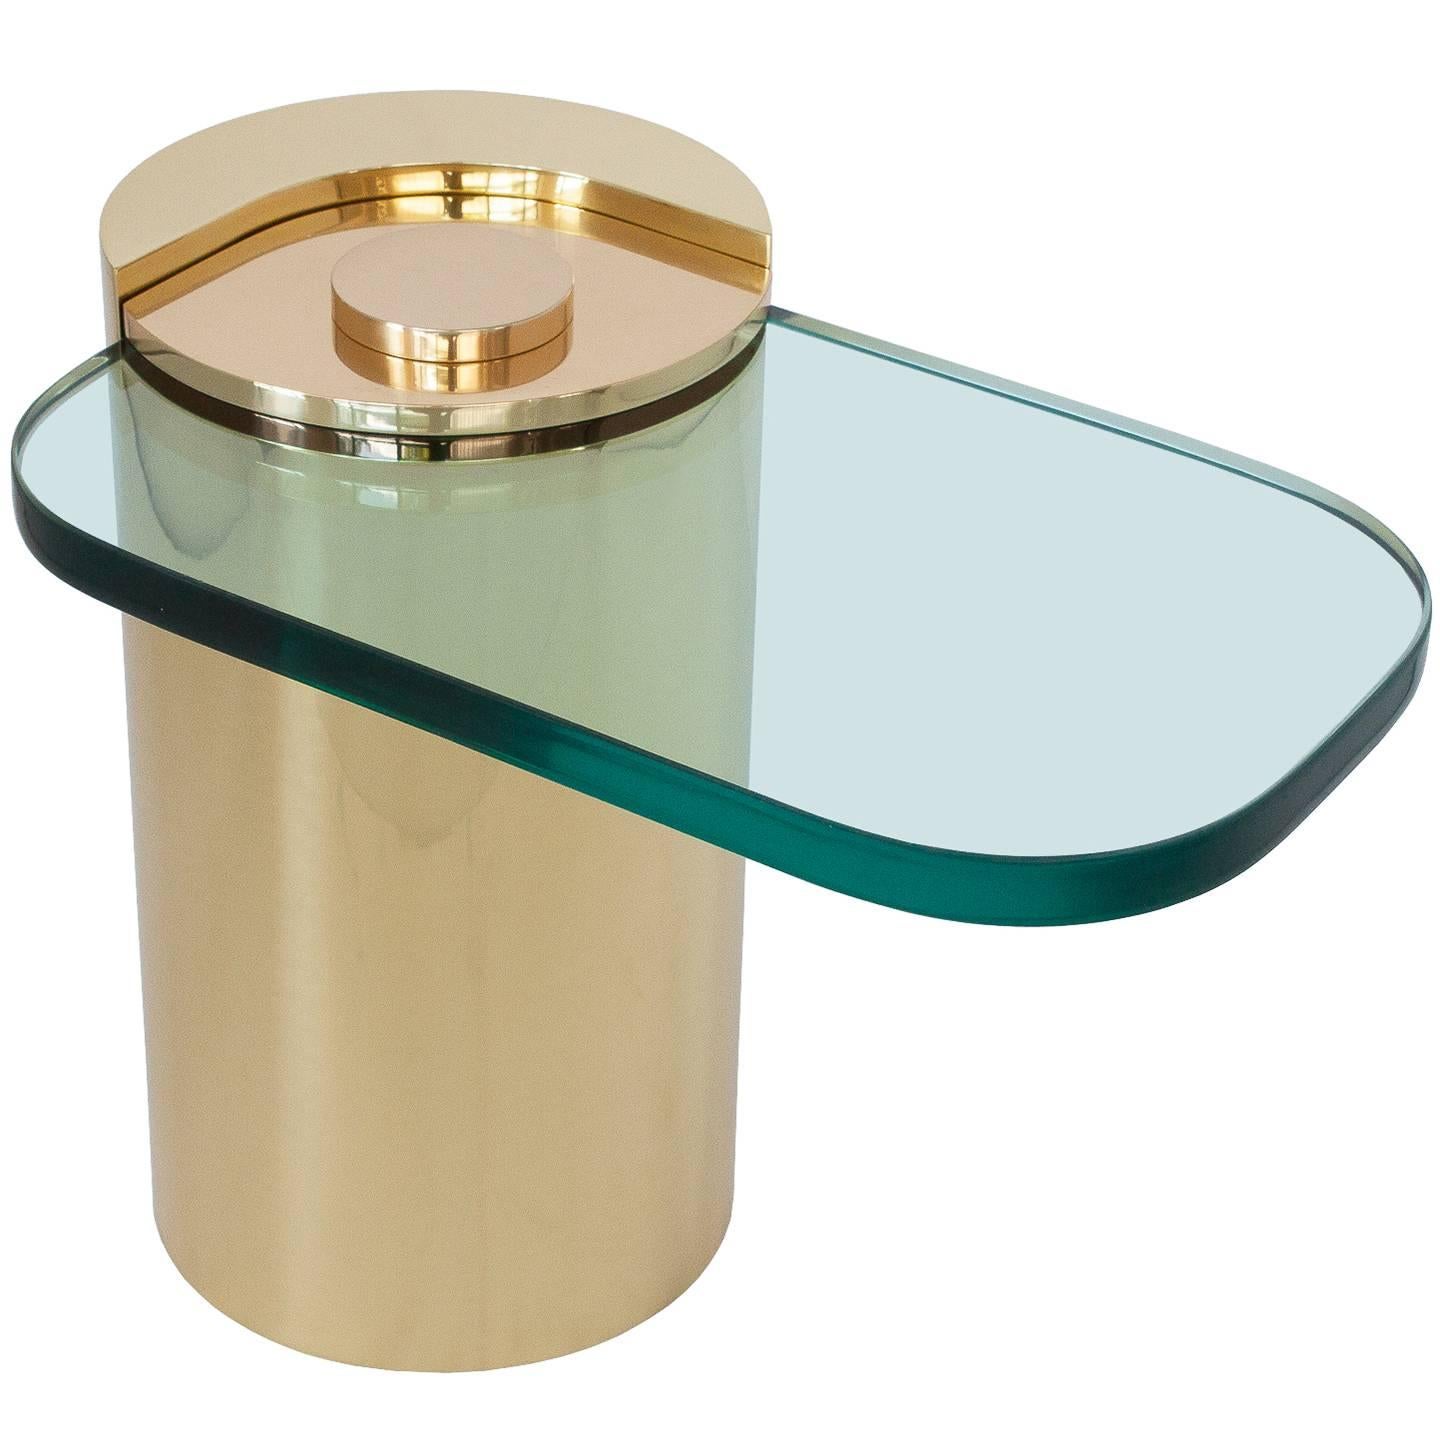 Karl Springer Brass Cylinder Cantilevered Side Table